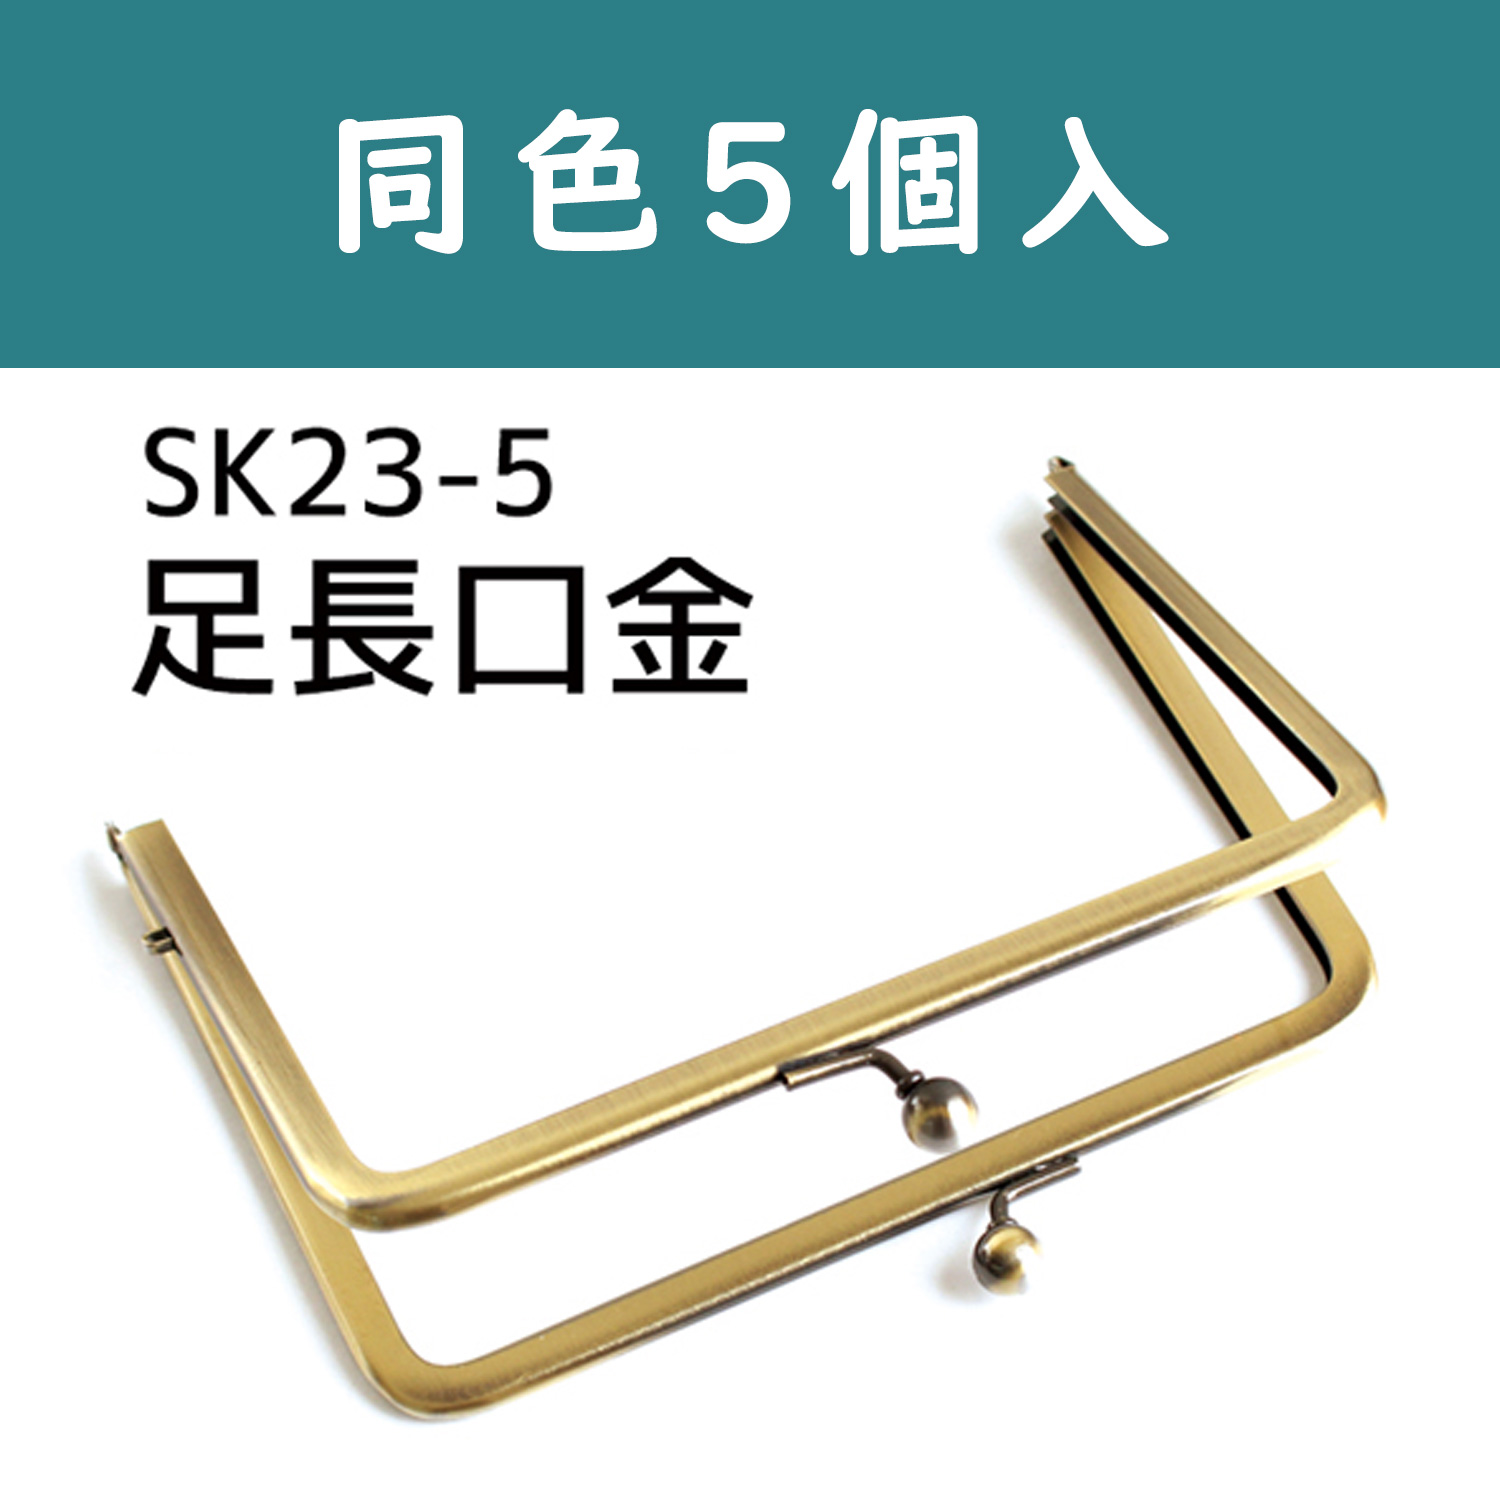 SK23-5　Wide Open Purse Frame　W15.2×11cm　5pcs/set (set)